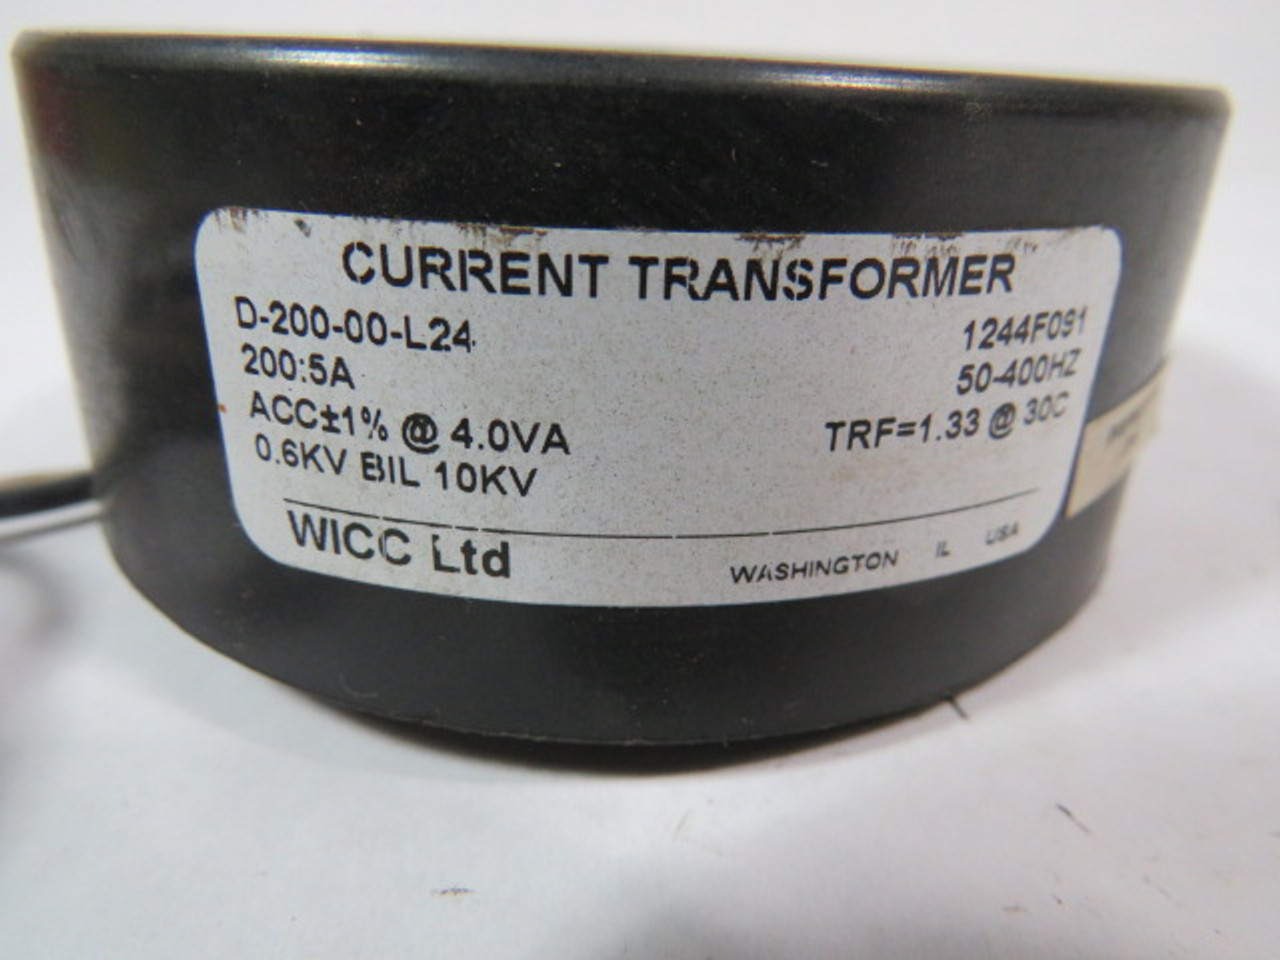 Wicc D-200-00-L24 Current Transformer 200:5A 4 VA PRI 0.6KV SEC 10KV USED